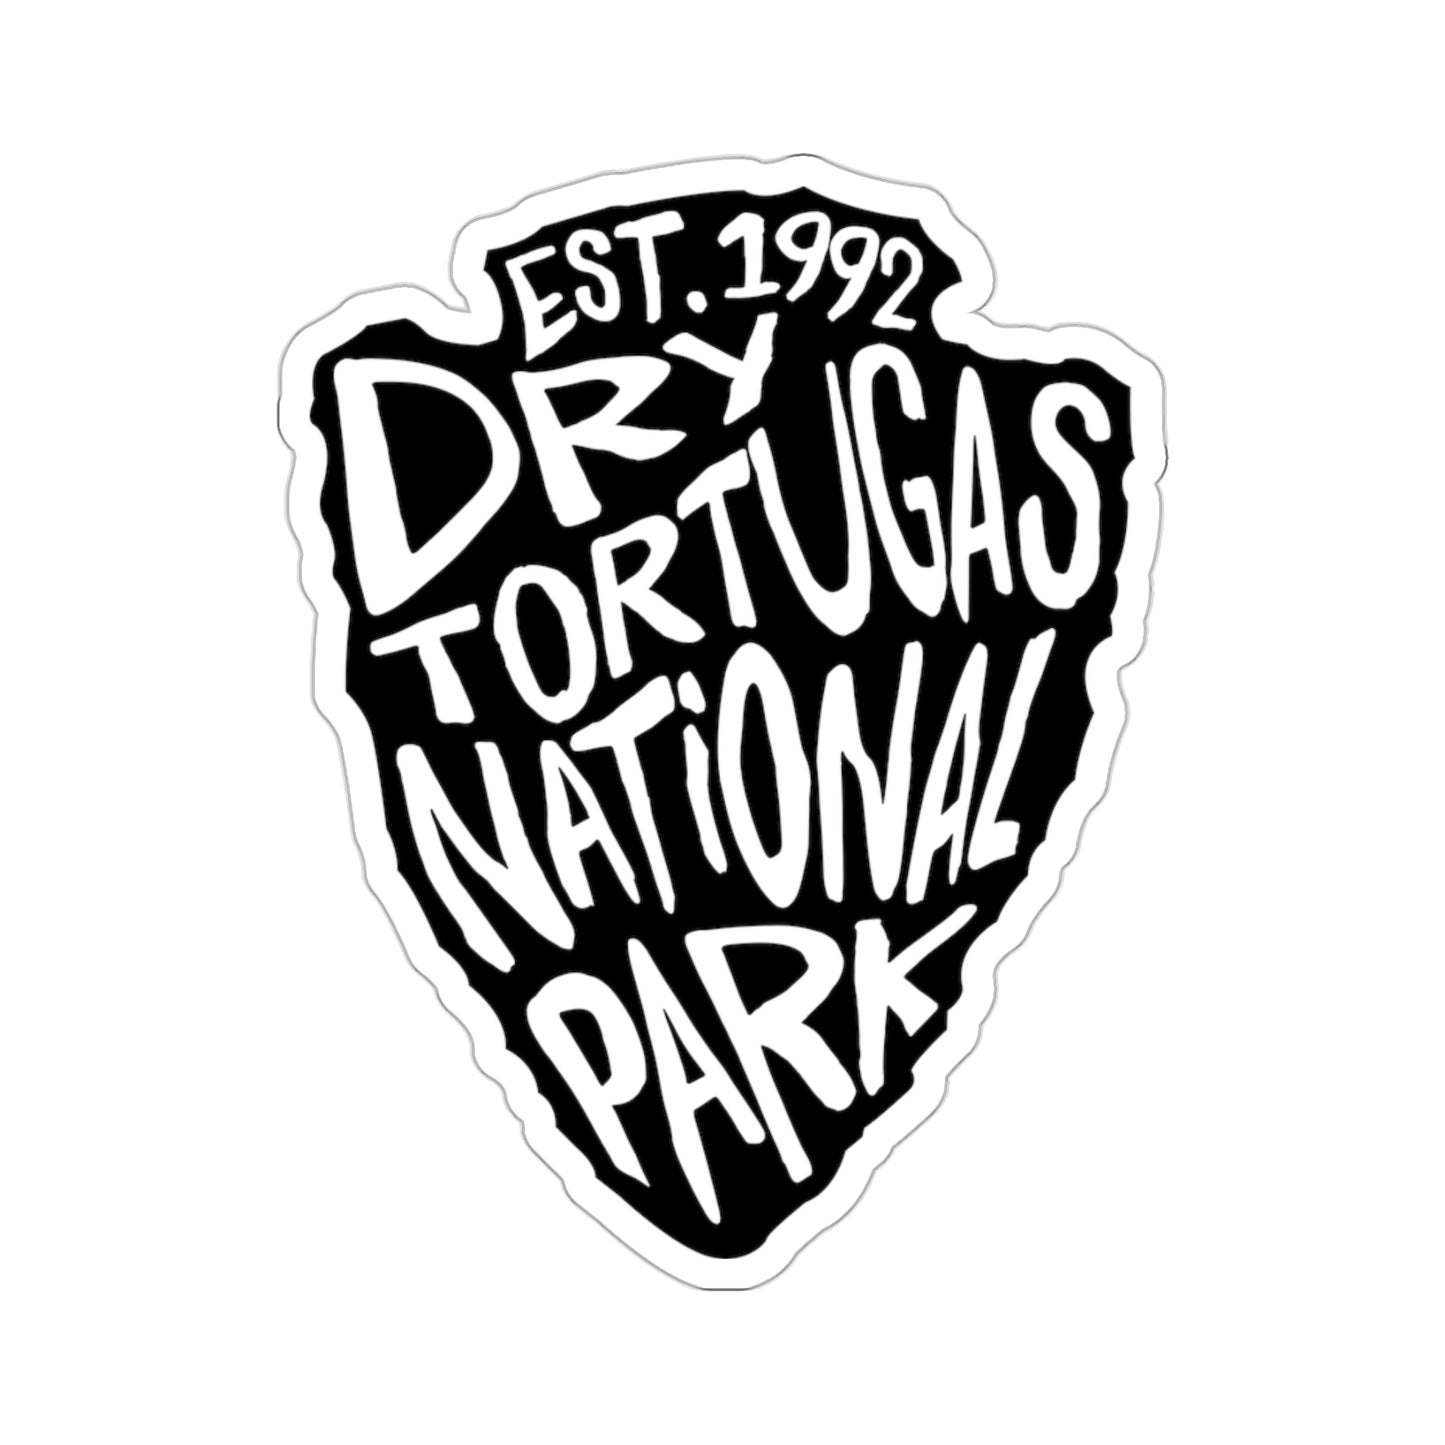 Dry Tortugas National Park Sticker - Arrow Head Design